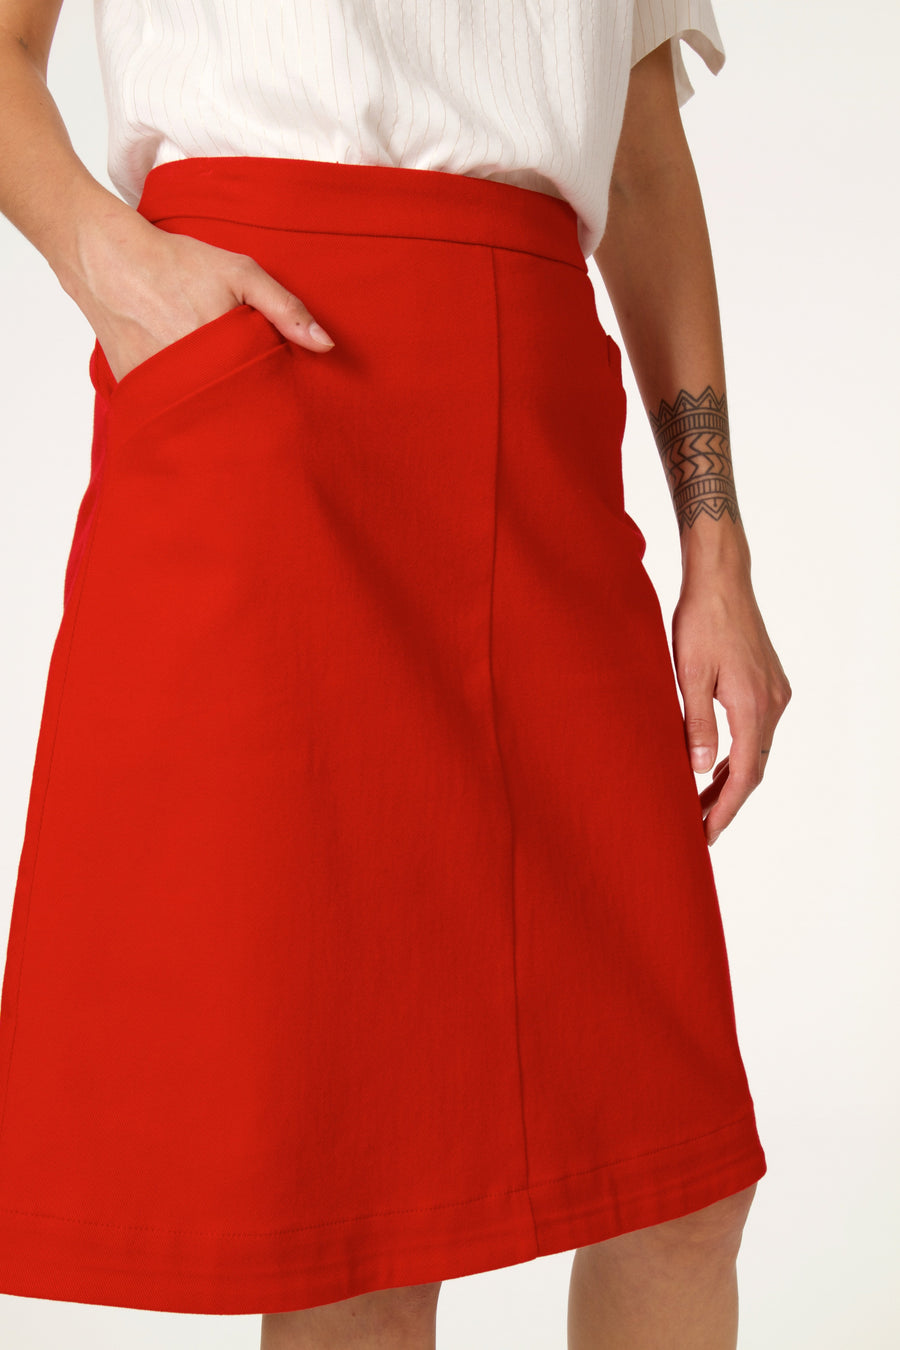 SALOUEN skirt